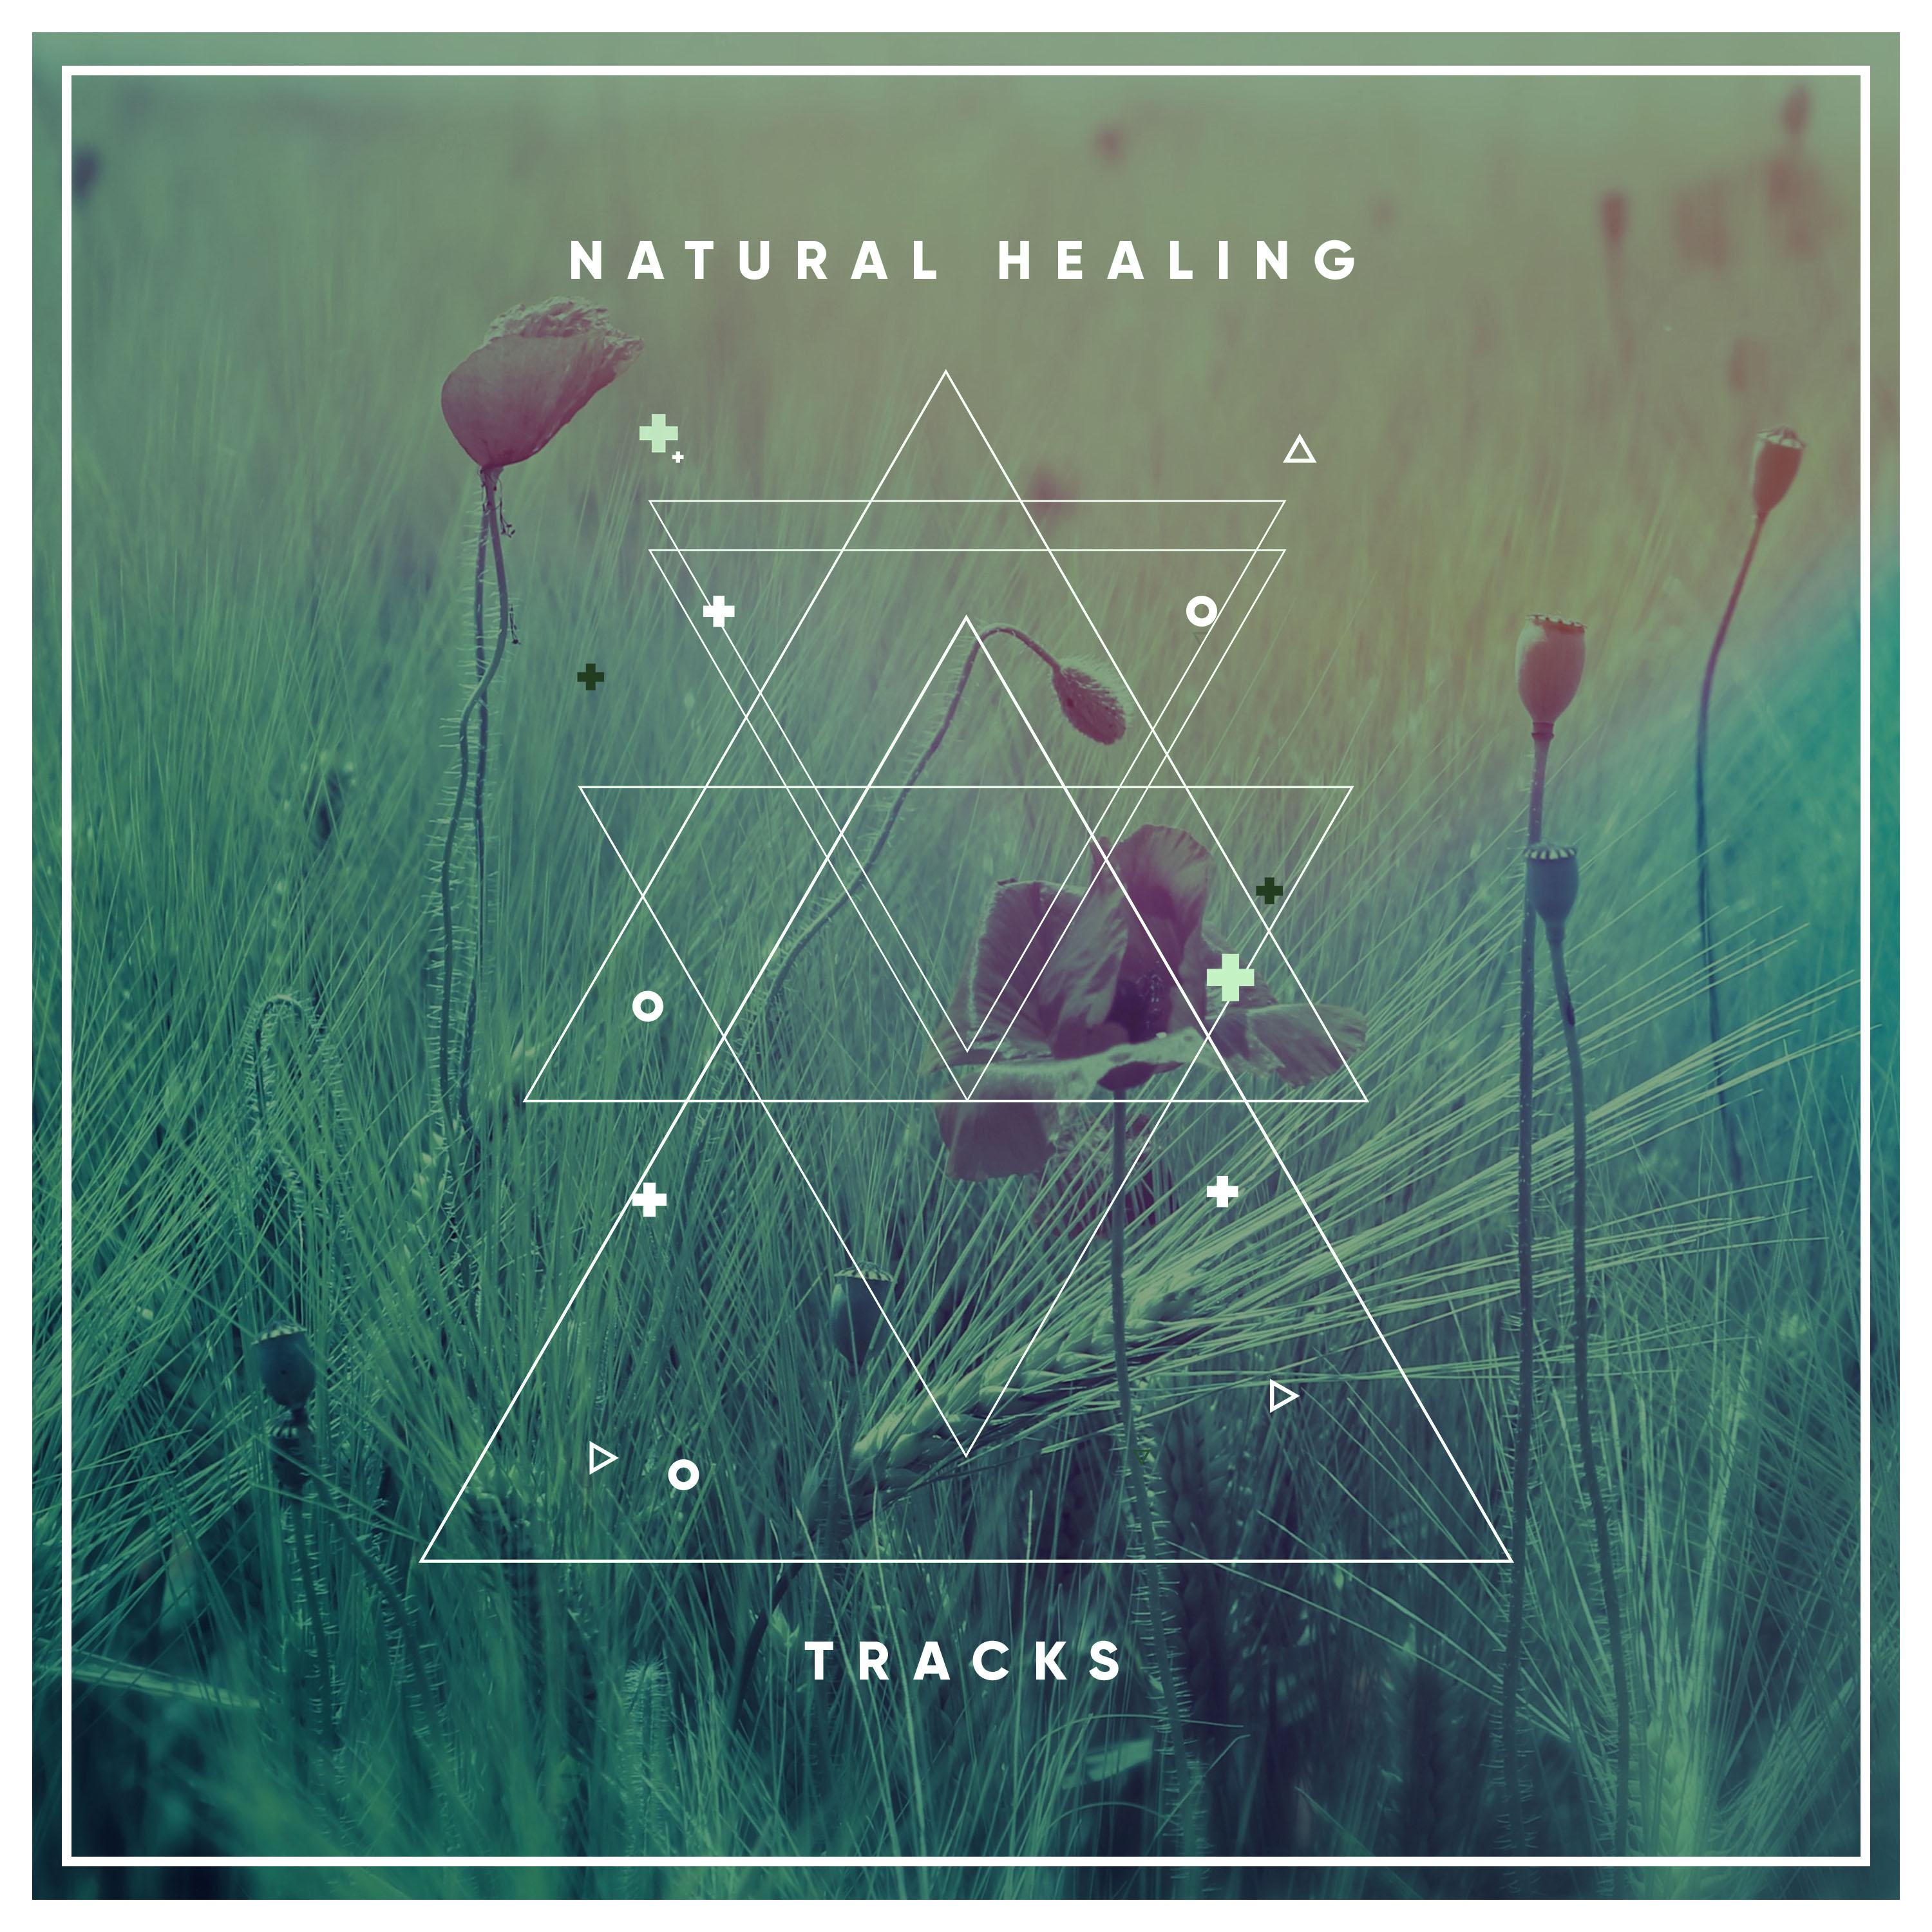 19 Natural Healing Tracks